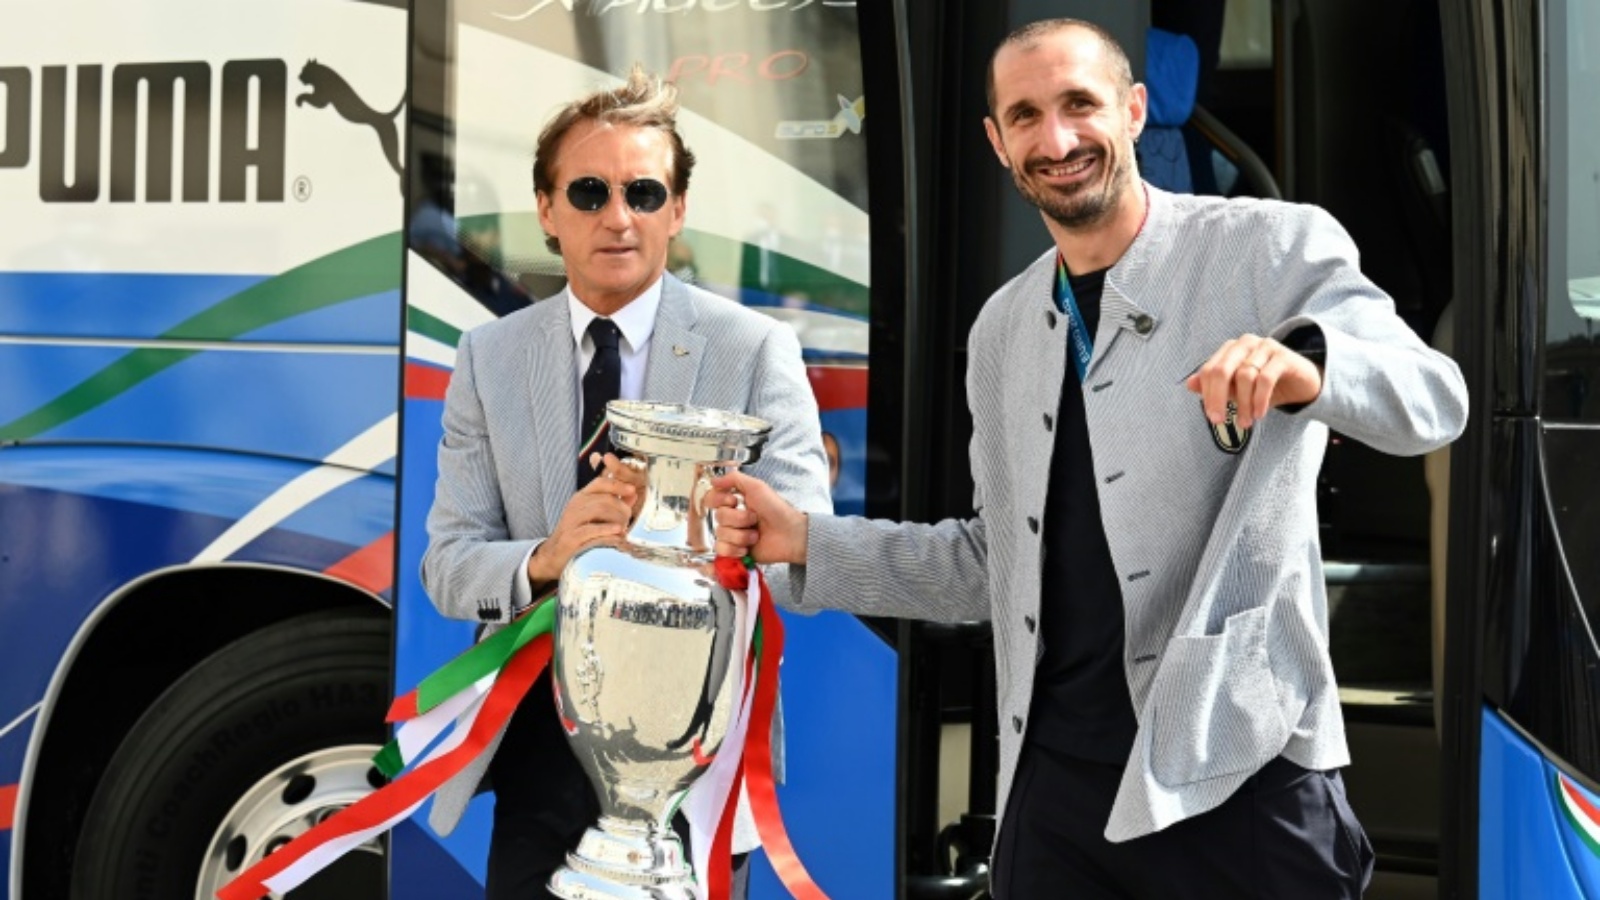 مدرّب المنتخب الإيطالي روبرتو مانشيني (يسار) وقائده جورجو كييليني يحملان كأس أوروبا 2020 قبل حفل تكريمي في القصر الرئاسي ف يالعاصمة روما في 12 تموز/ يوليو 2021.